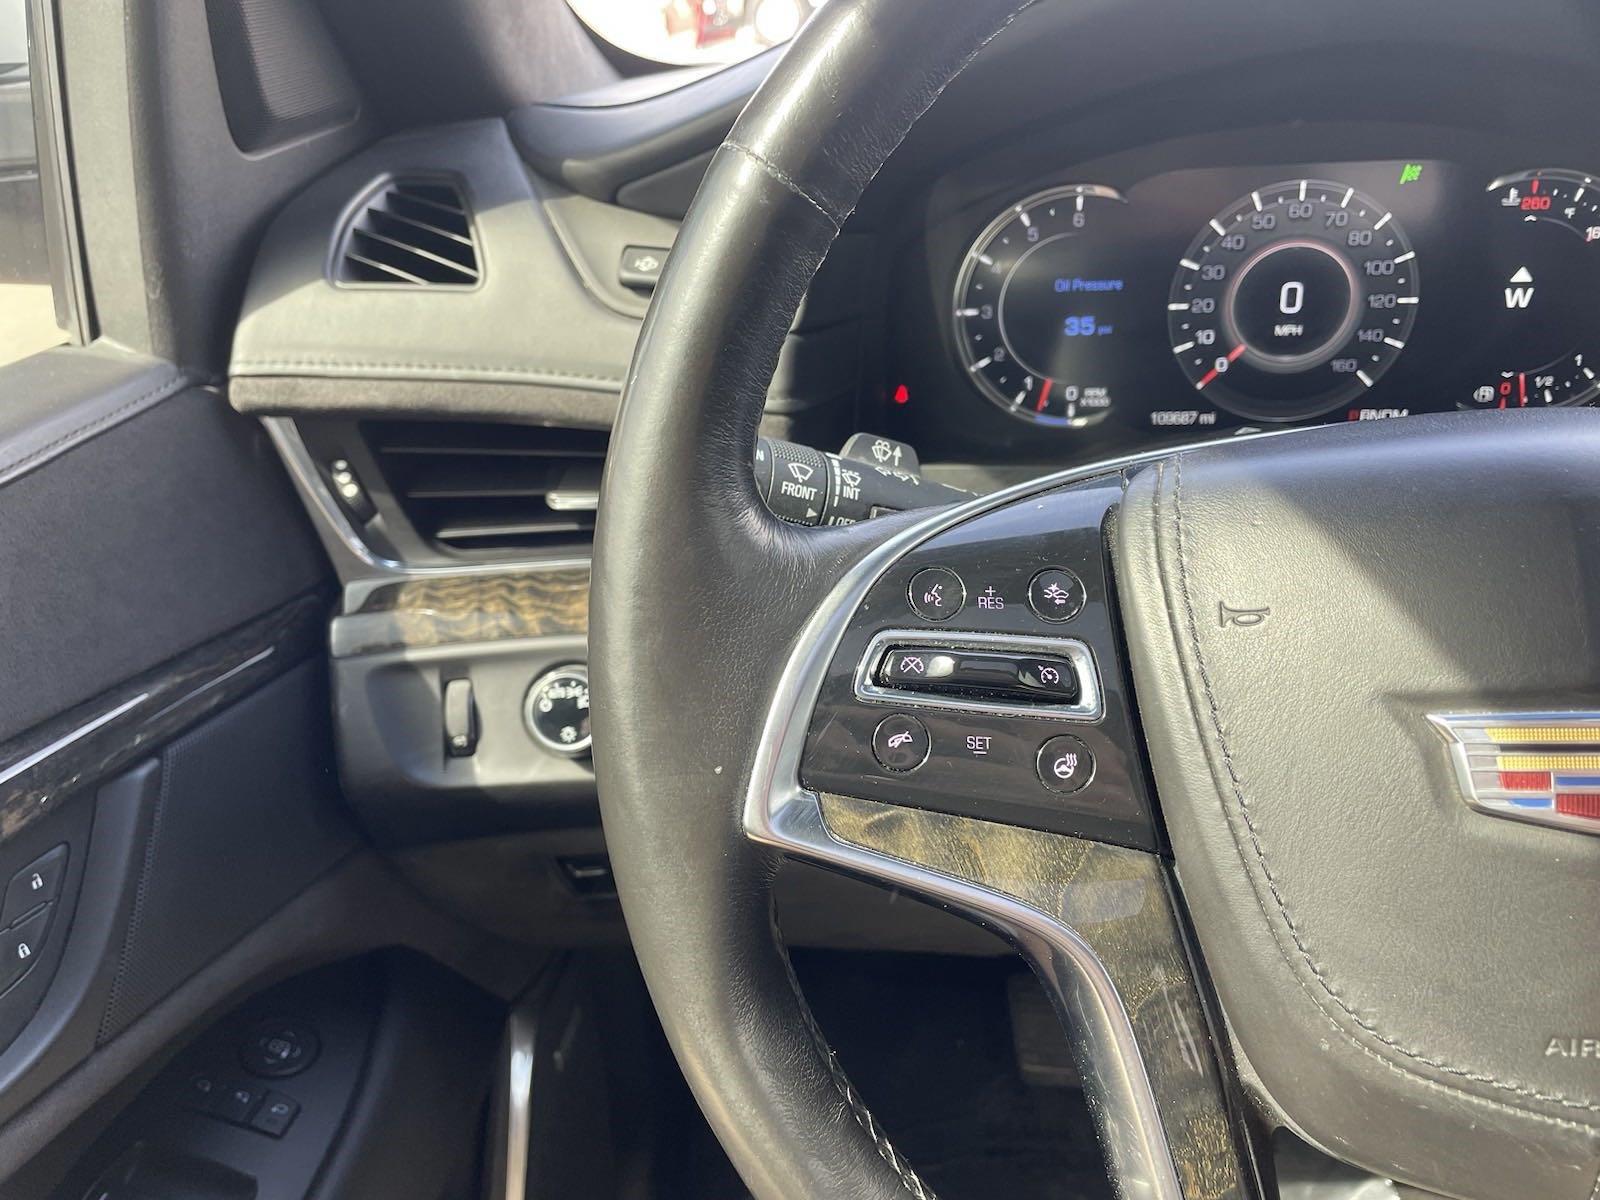 Used 2016 Cadillac Escalade Platinum SUV for sale in Lincoln NE